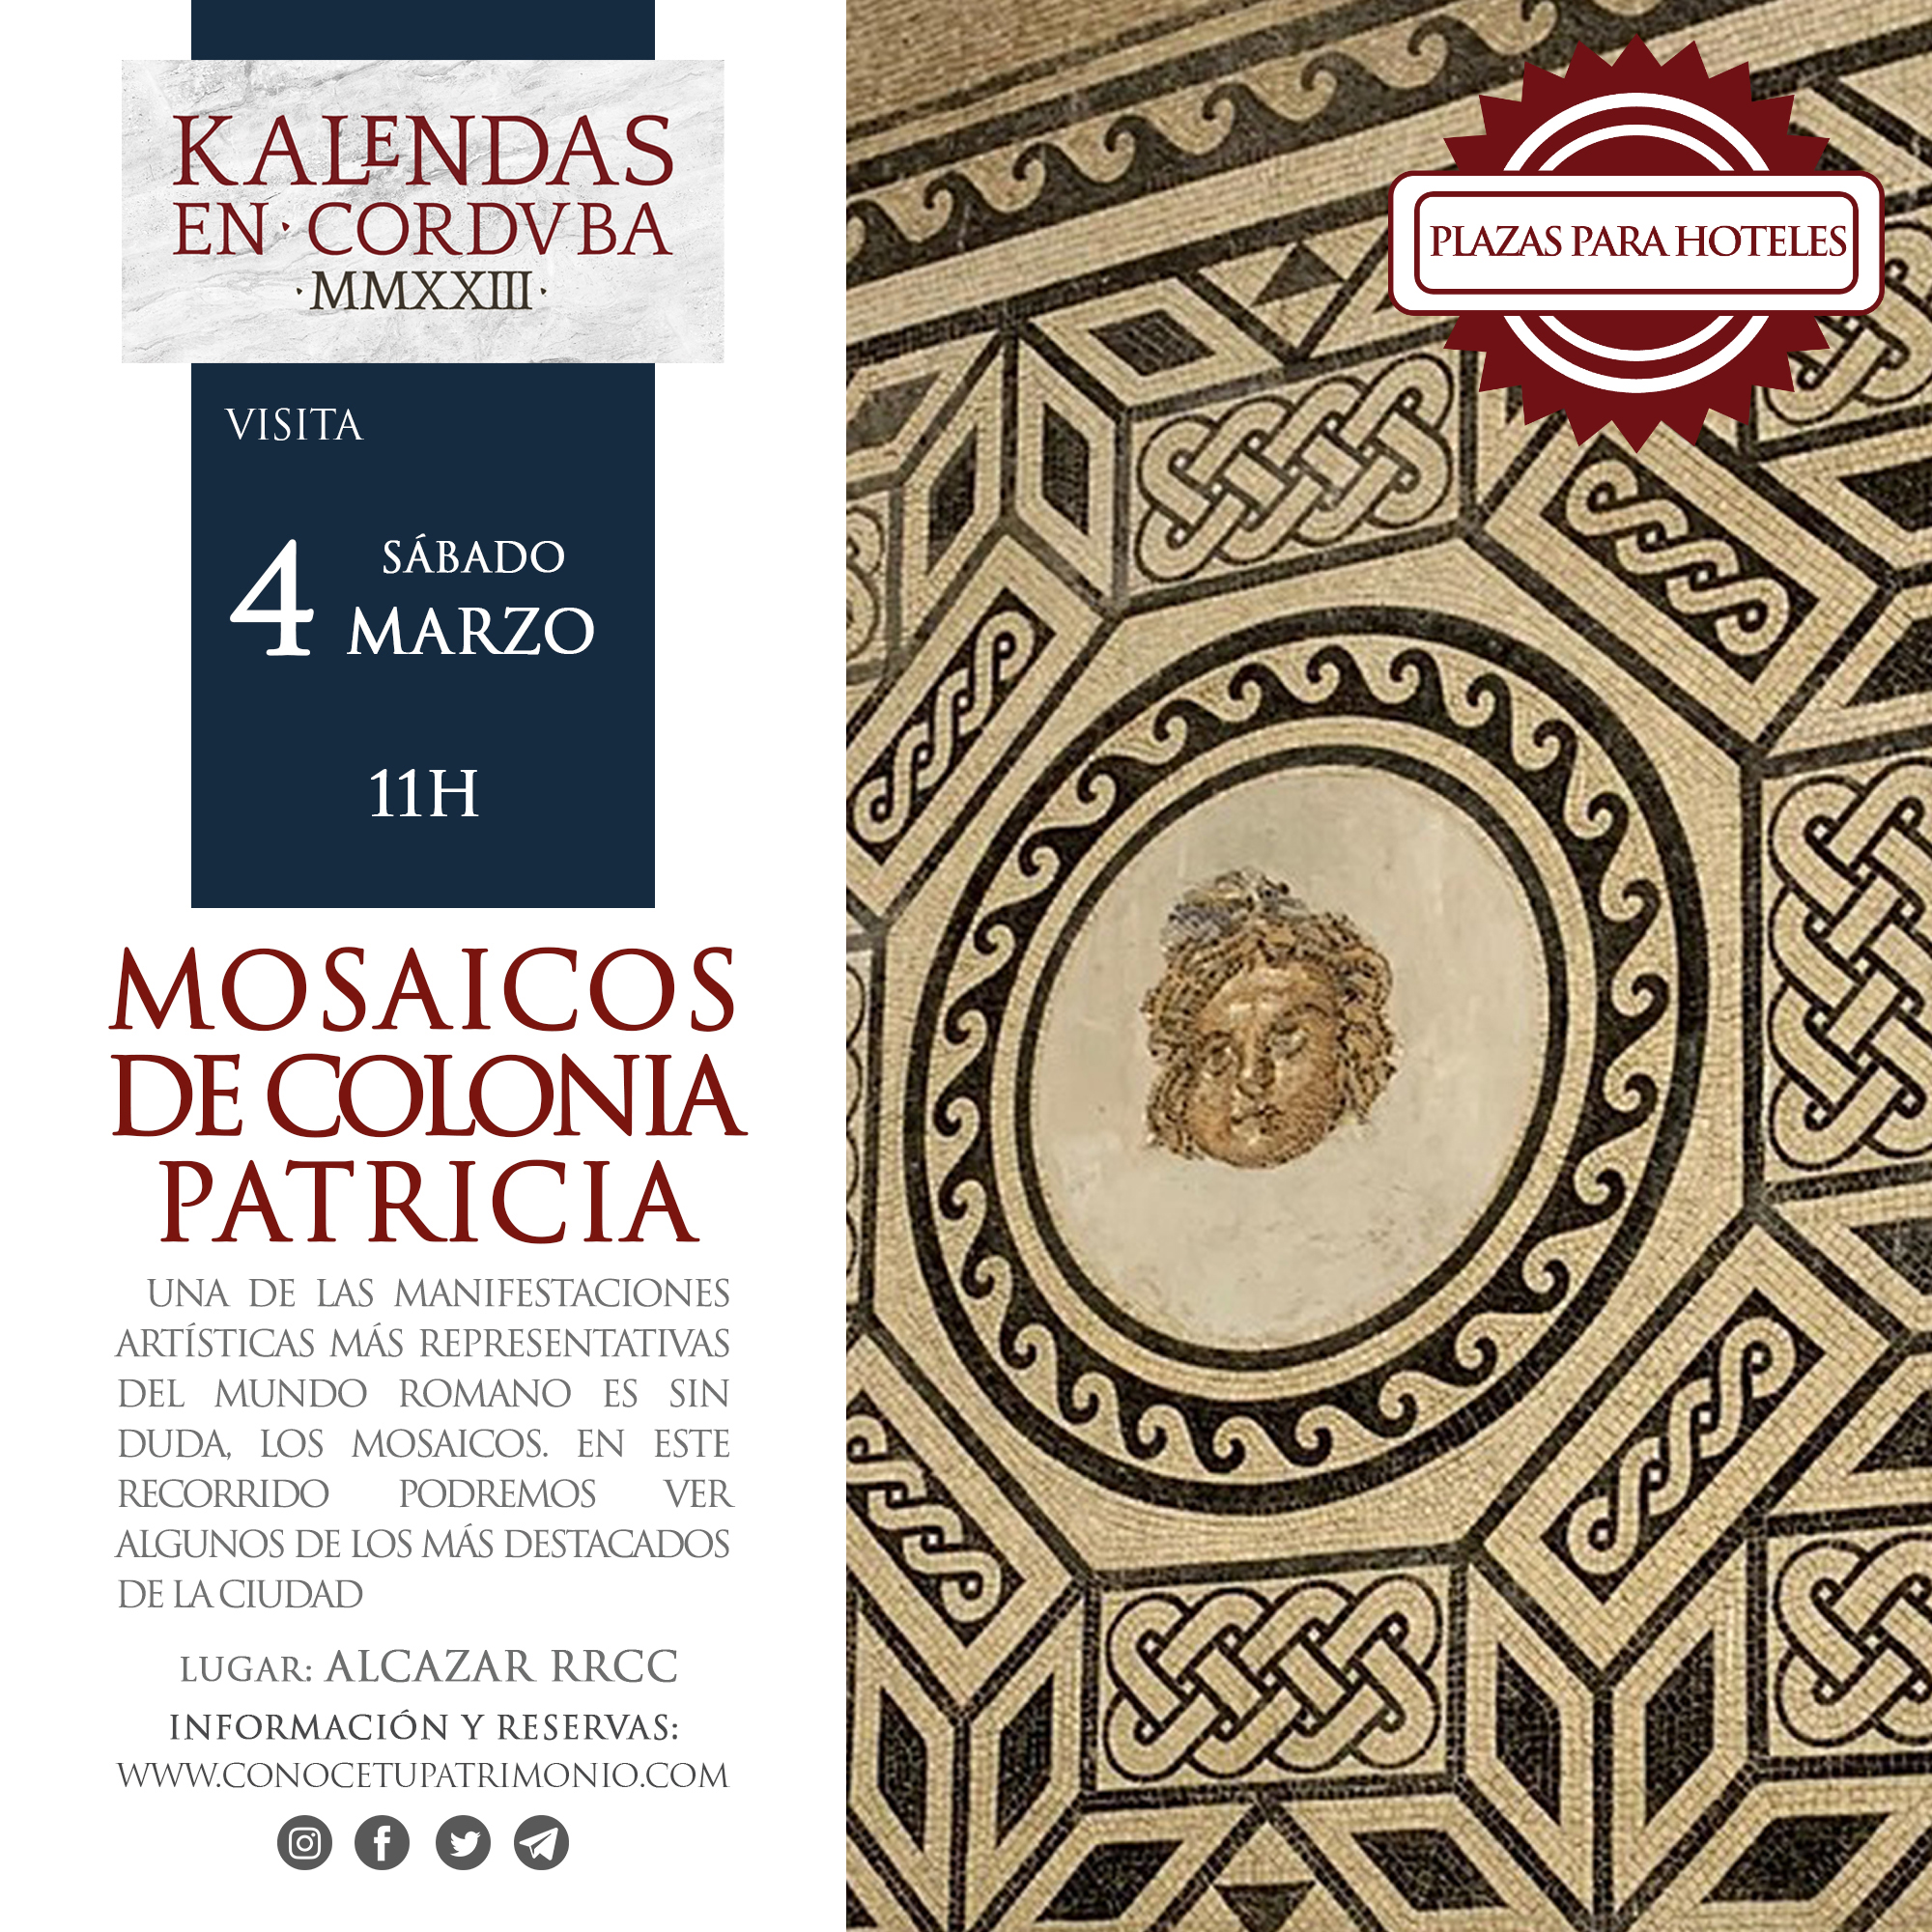 Hotel -  Visita - Los mosaicos de Colonia Patricia- 4 Marzo - 11 h.